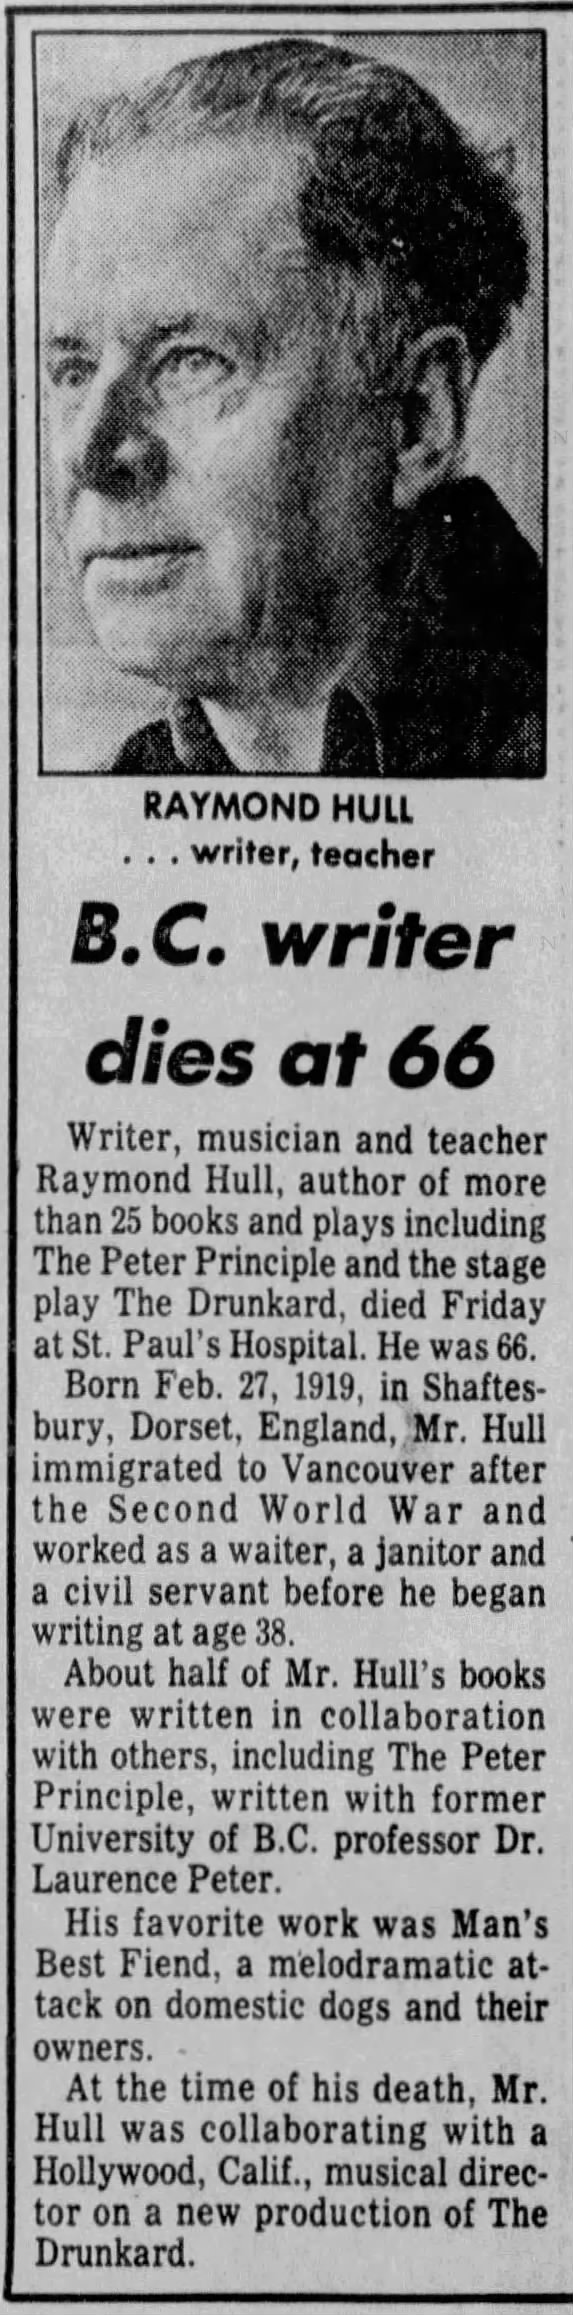 B.C. writer dies at 66